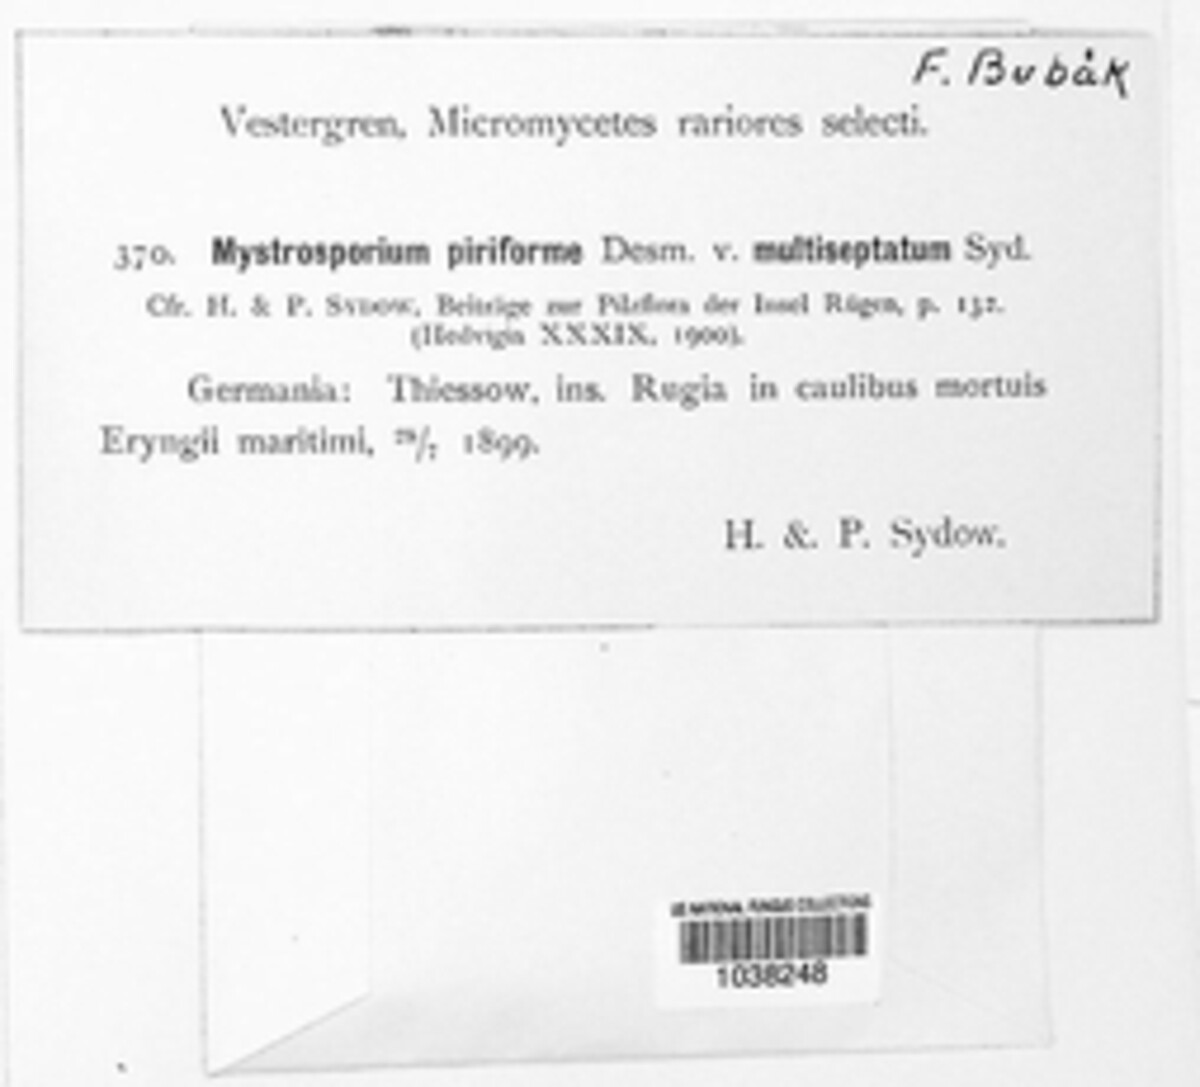 Mystrosporium piriforme image